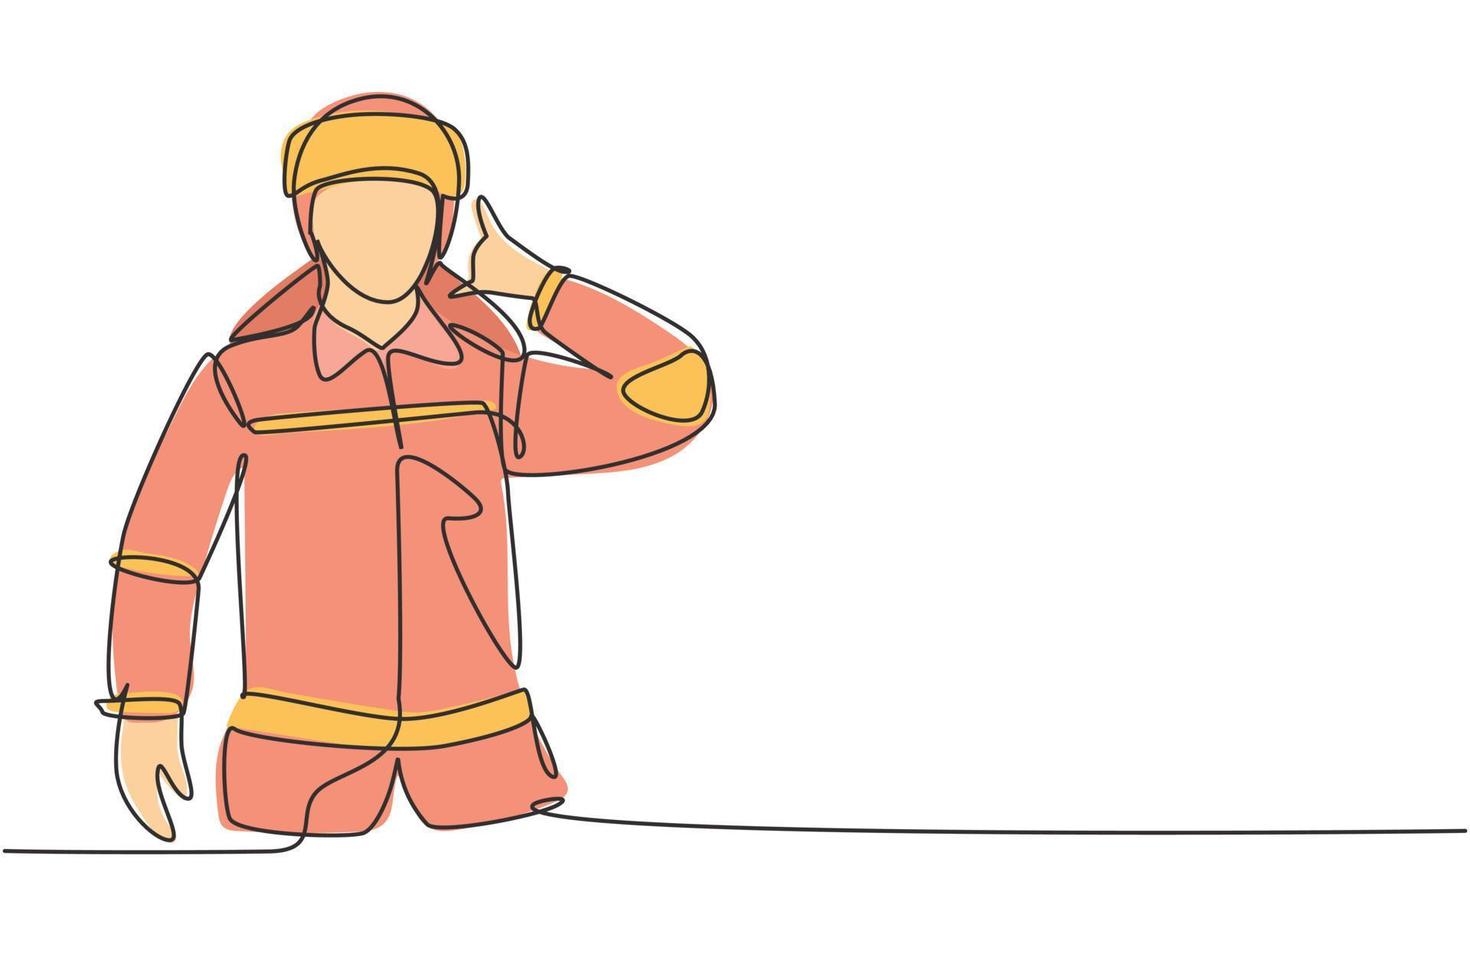 enkele één lijntekening brandweerlieden met uniform, bel me gebaar en draag een helm, bereid je voor om het vuur te blussen dat het gebouw verbrandde. moderne doorlopende lijn tekenen ontwerp grafische vectorillustratie vector